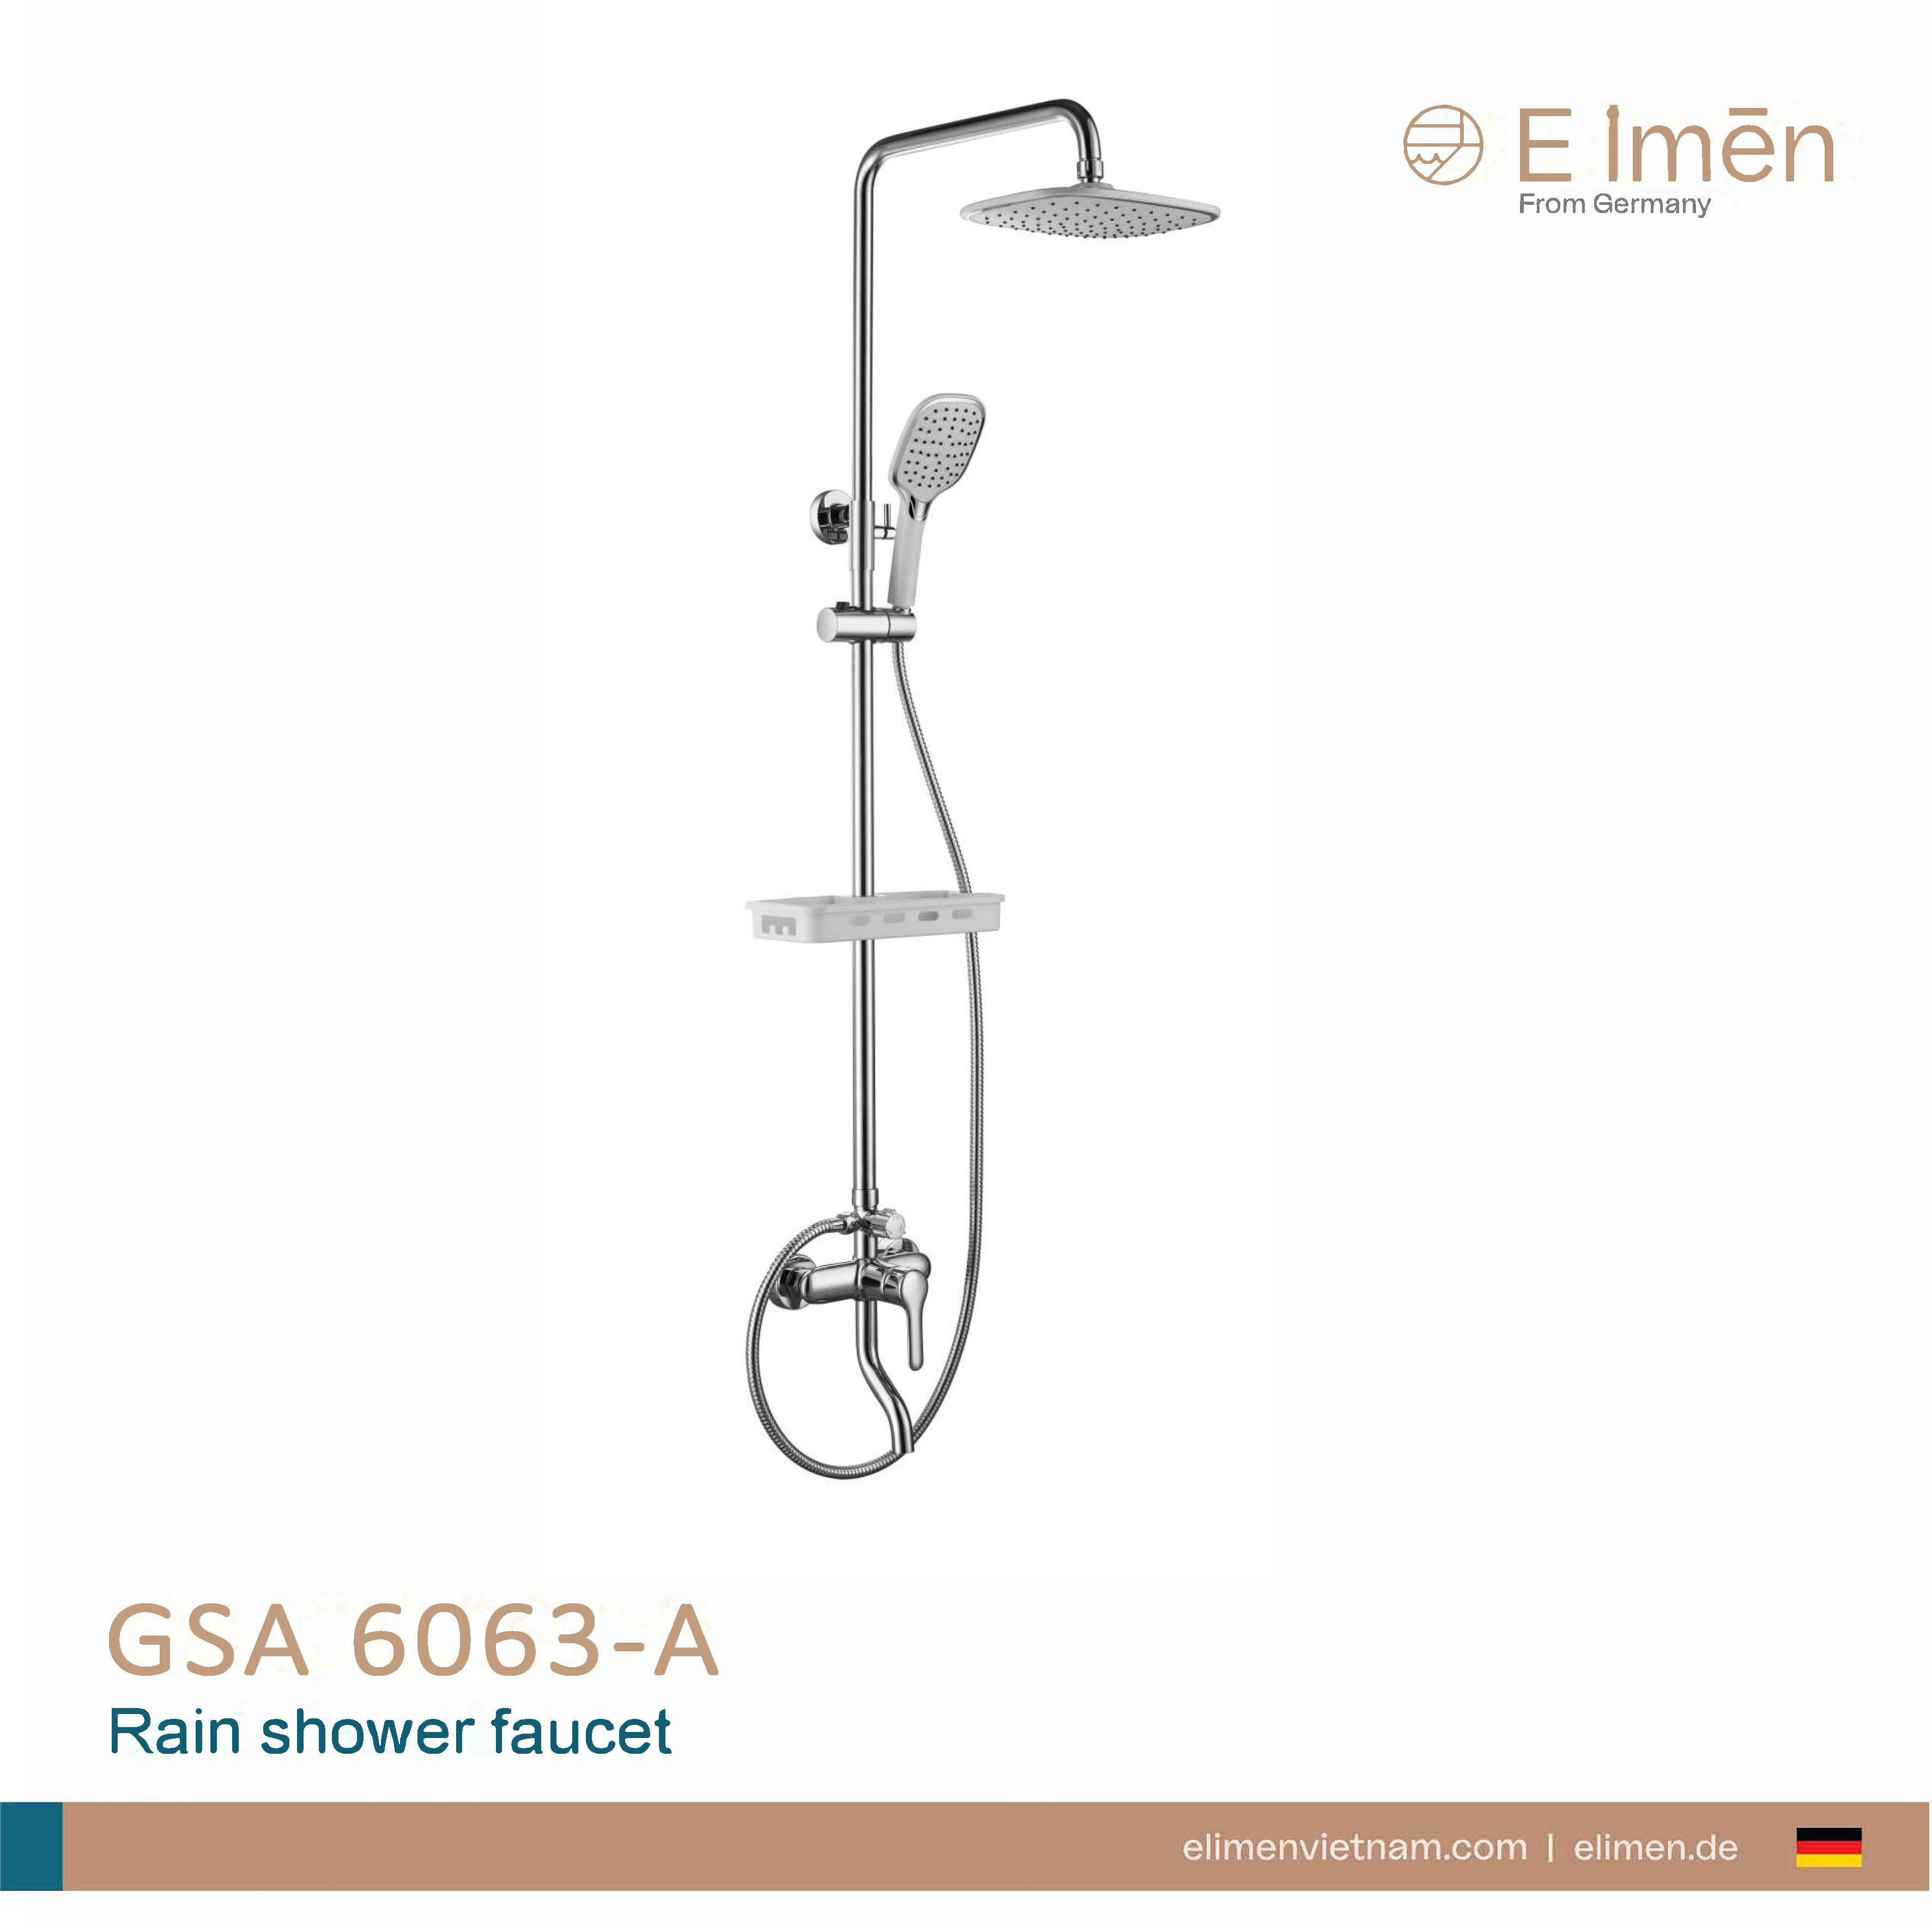 Sen cây tắm Elimen - Mã GSA 6063-A